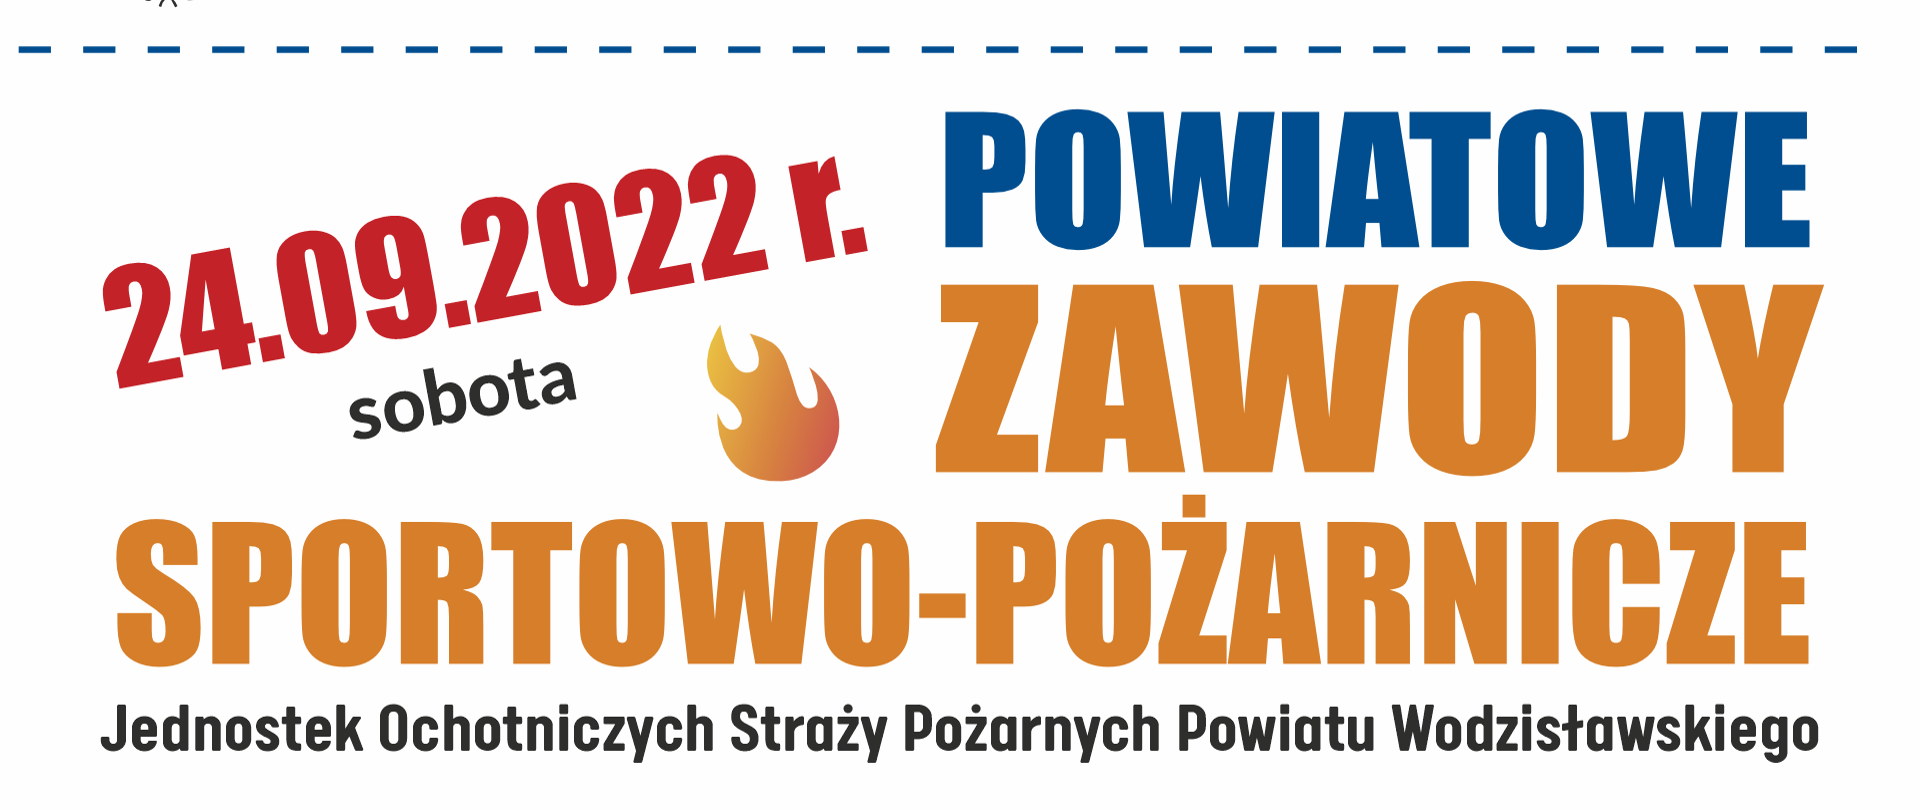 Plakat reklamujący Powiatowe Zawody Sportowo Pożarnicze OSP. MOSiR Centrum, Bogumińska 8, Wodzisław Śląski, Sobota 24 września 2022 roku, godzina 10:00.